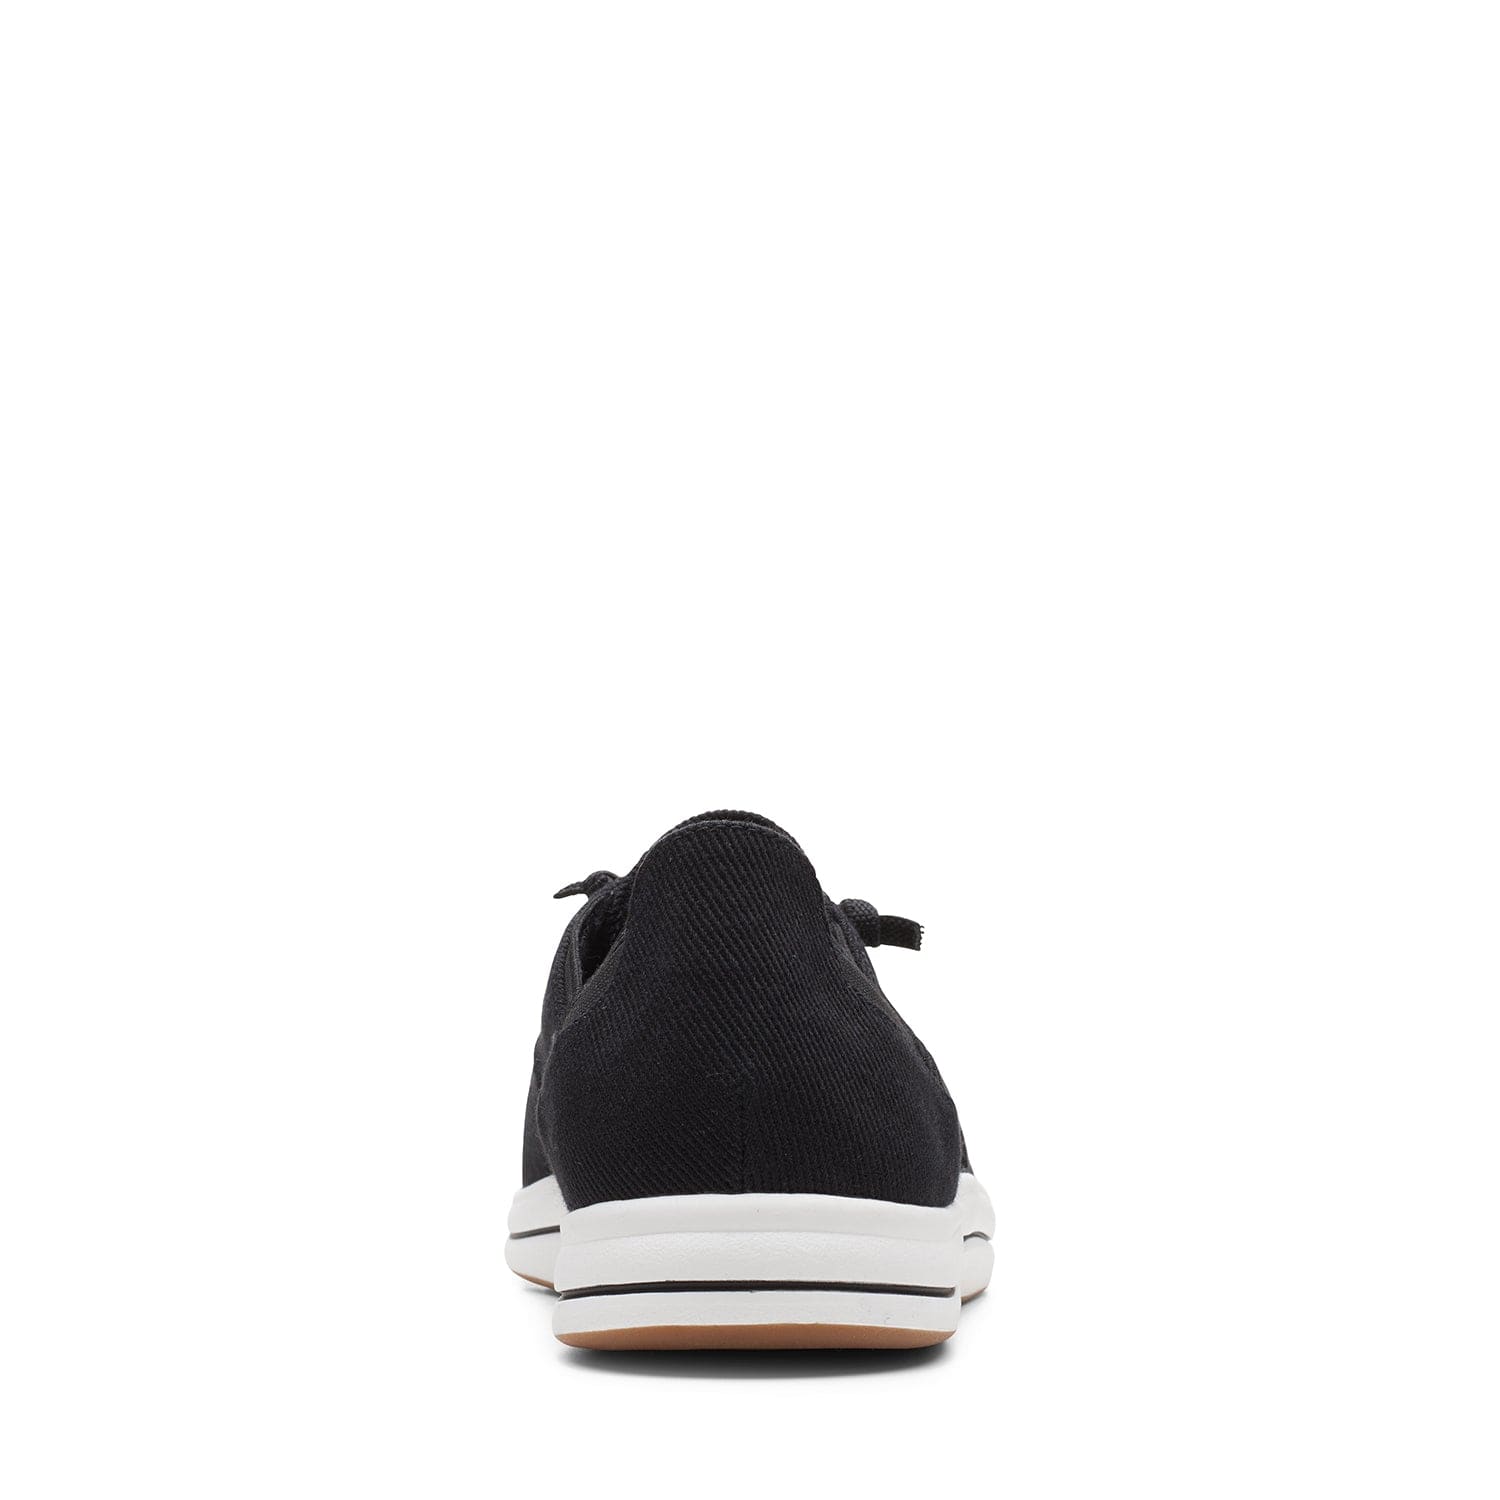 Clarks Brinkley Ave - Shoes - Black - 261665974 - D Width (Standard Fit)